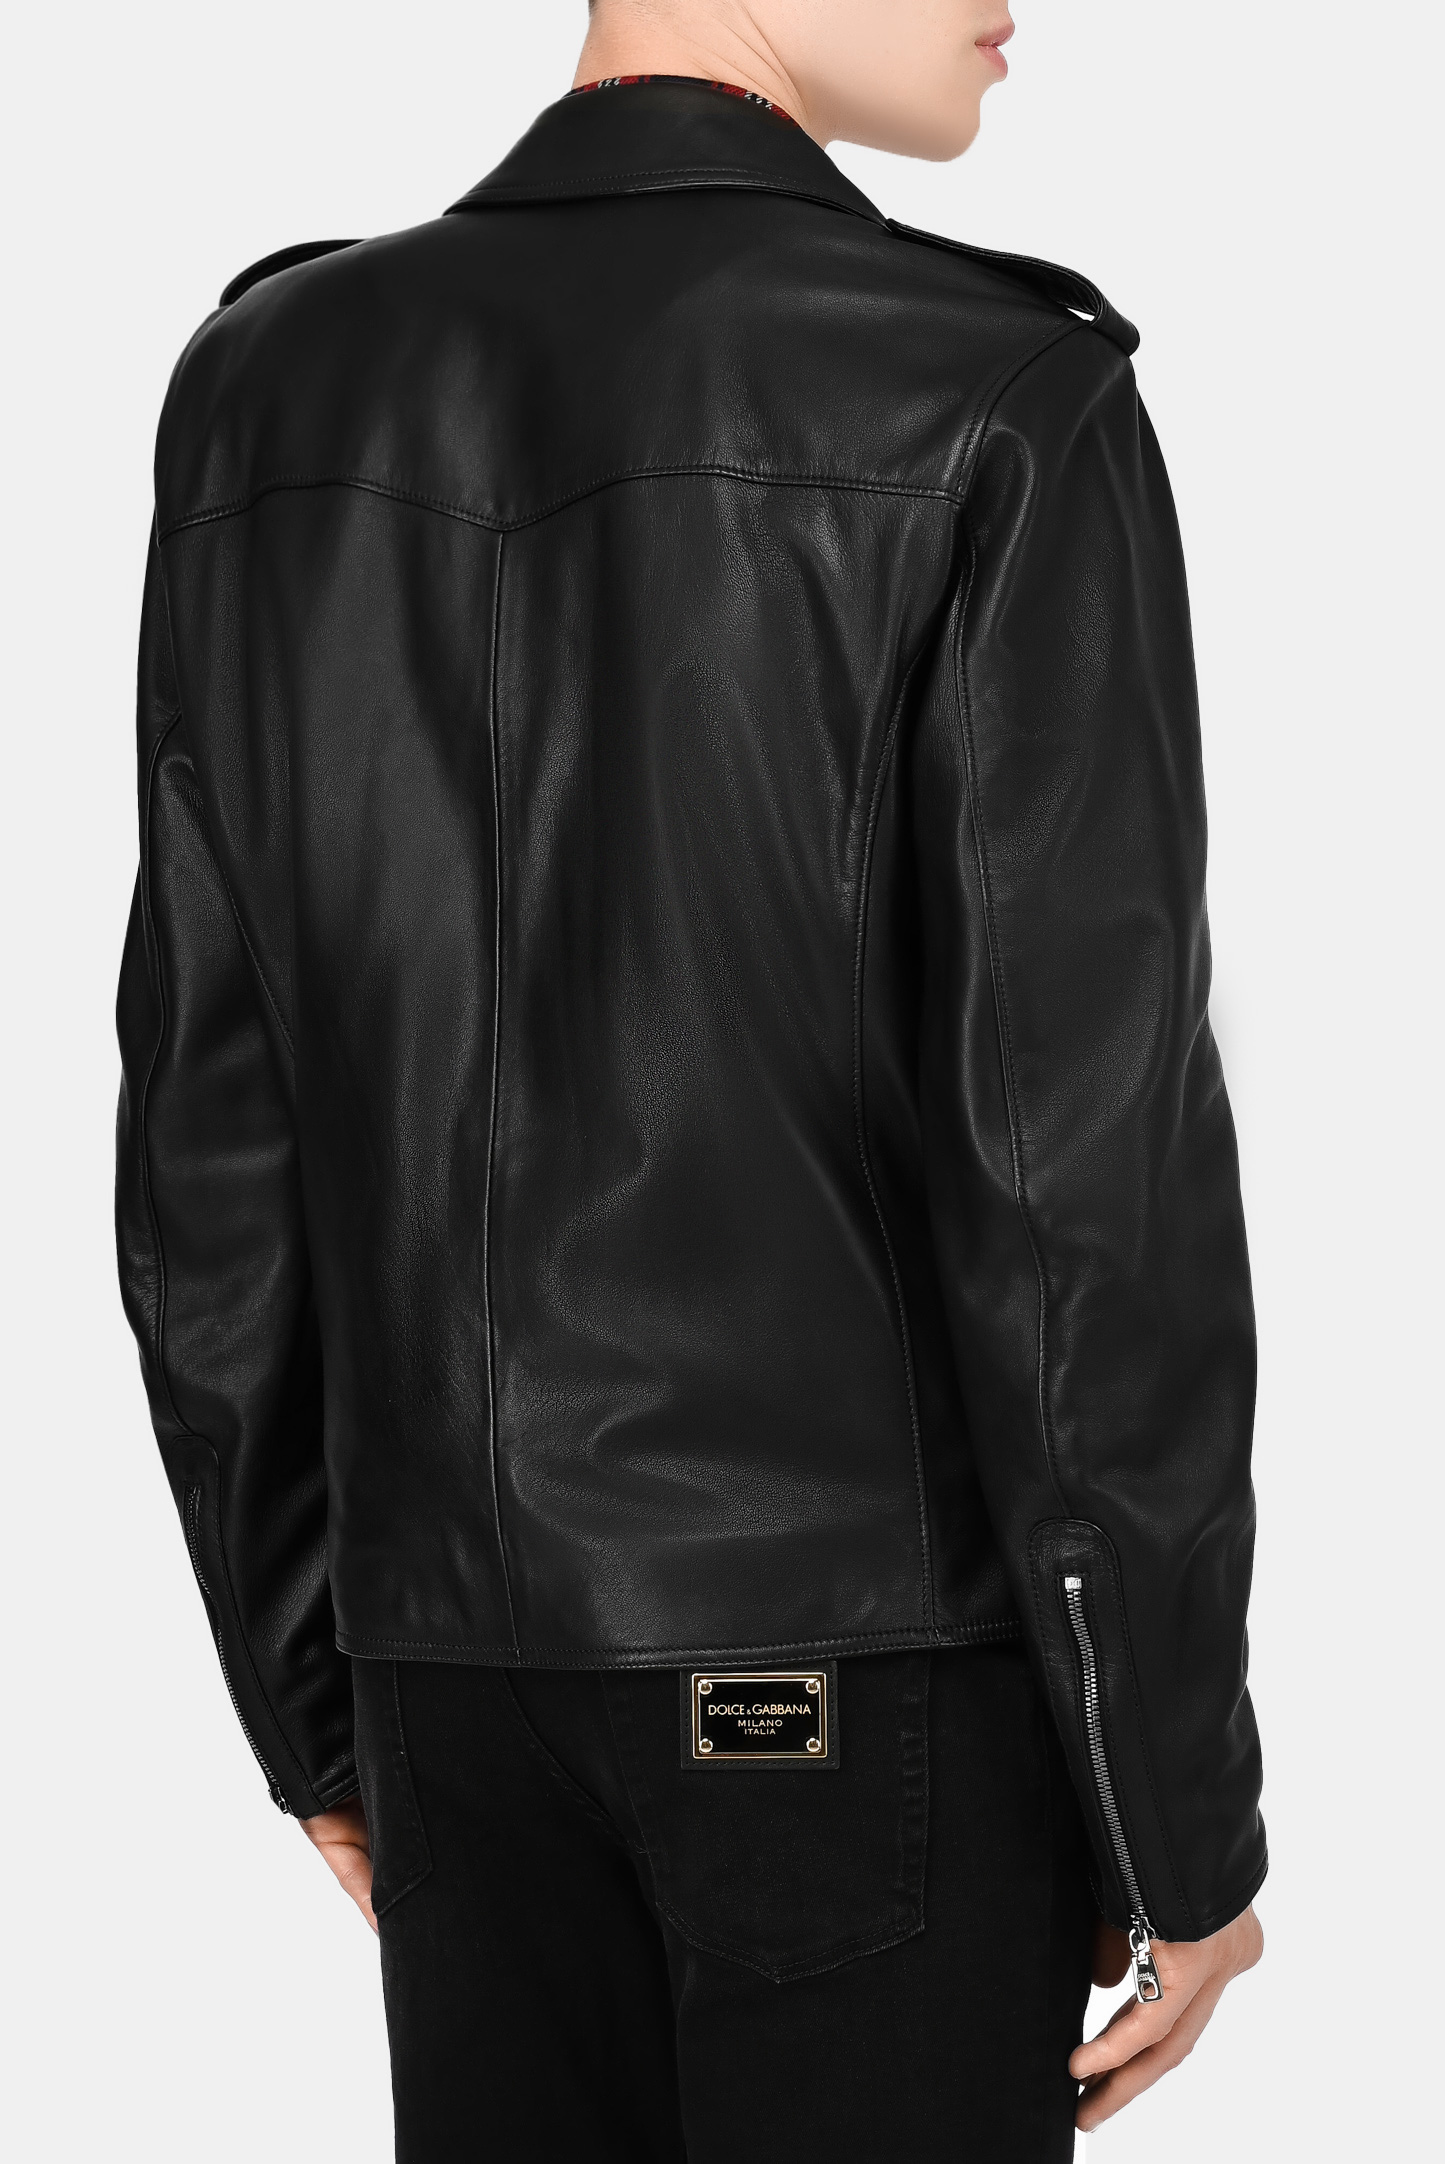 Куртка DOLCE & GABBANA G9UB1L GEU47, цвет: Черный, Мужской